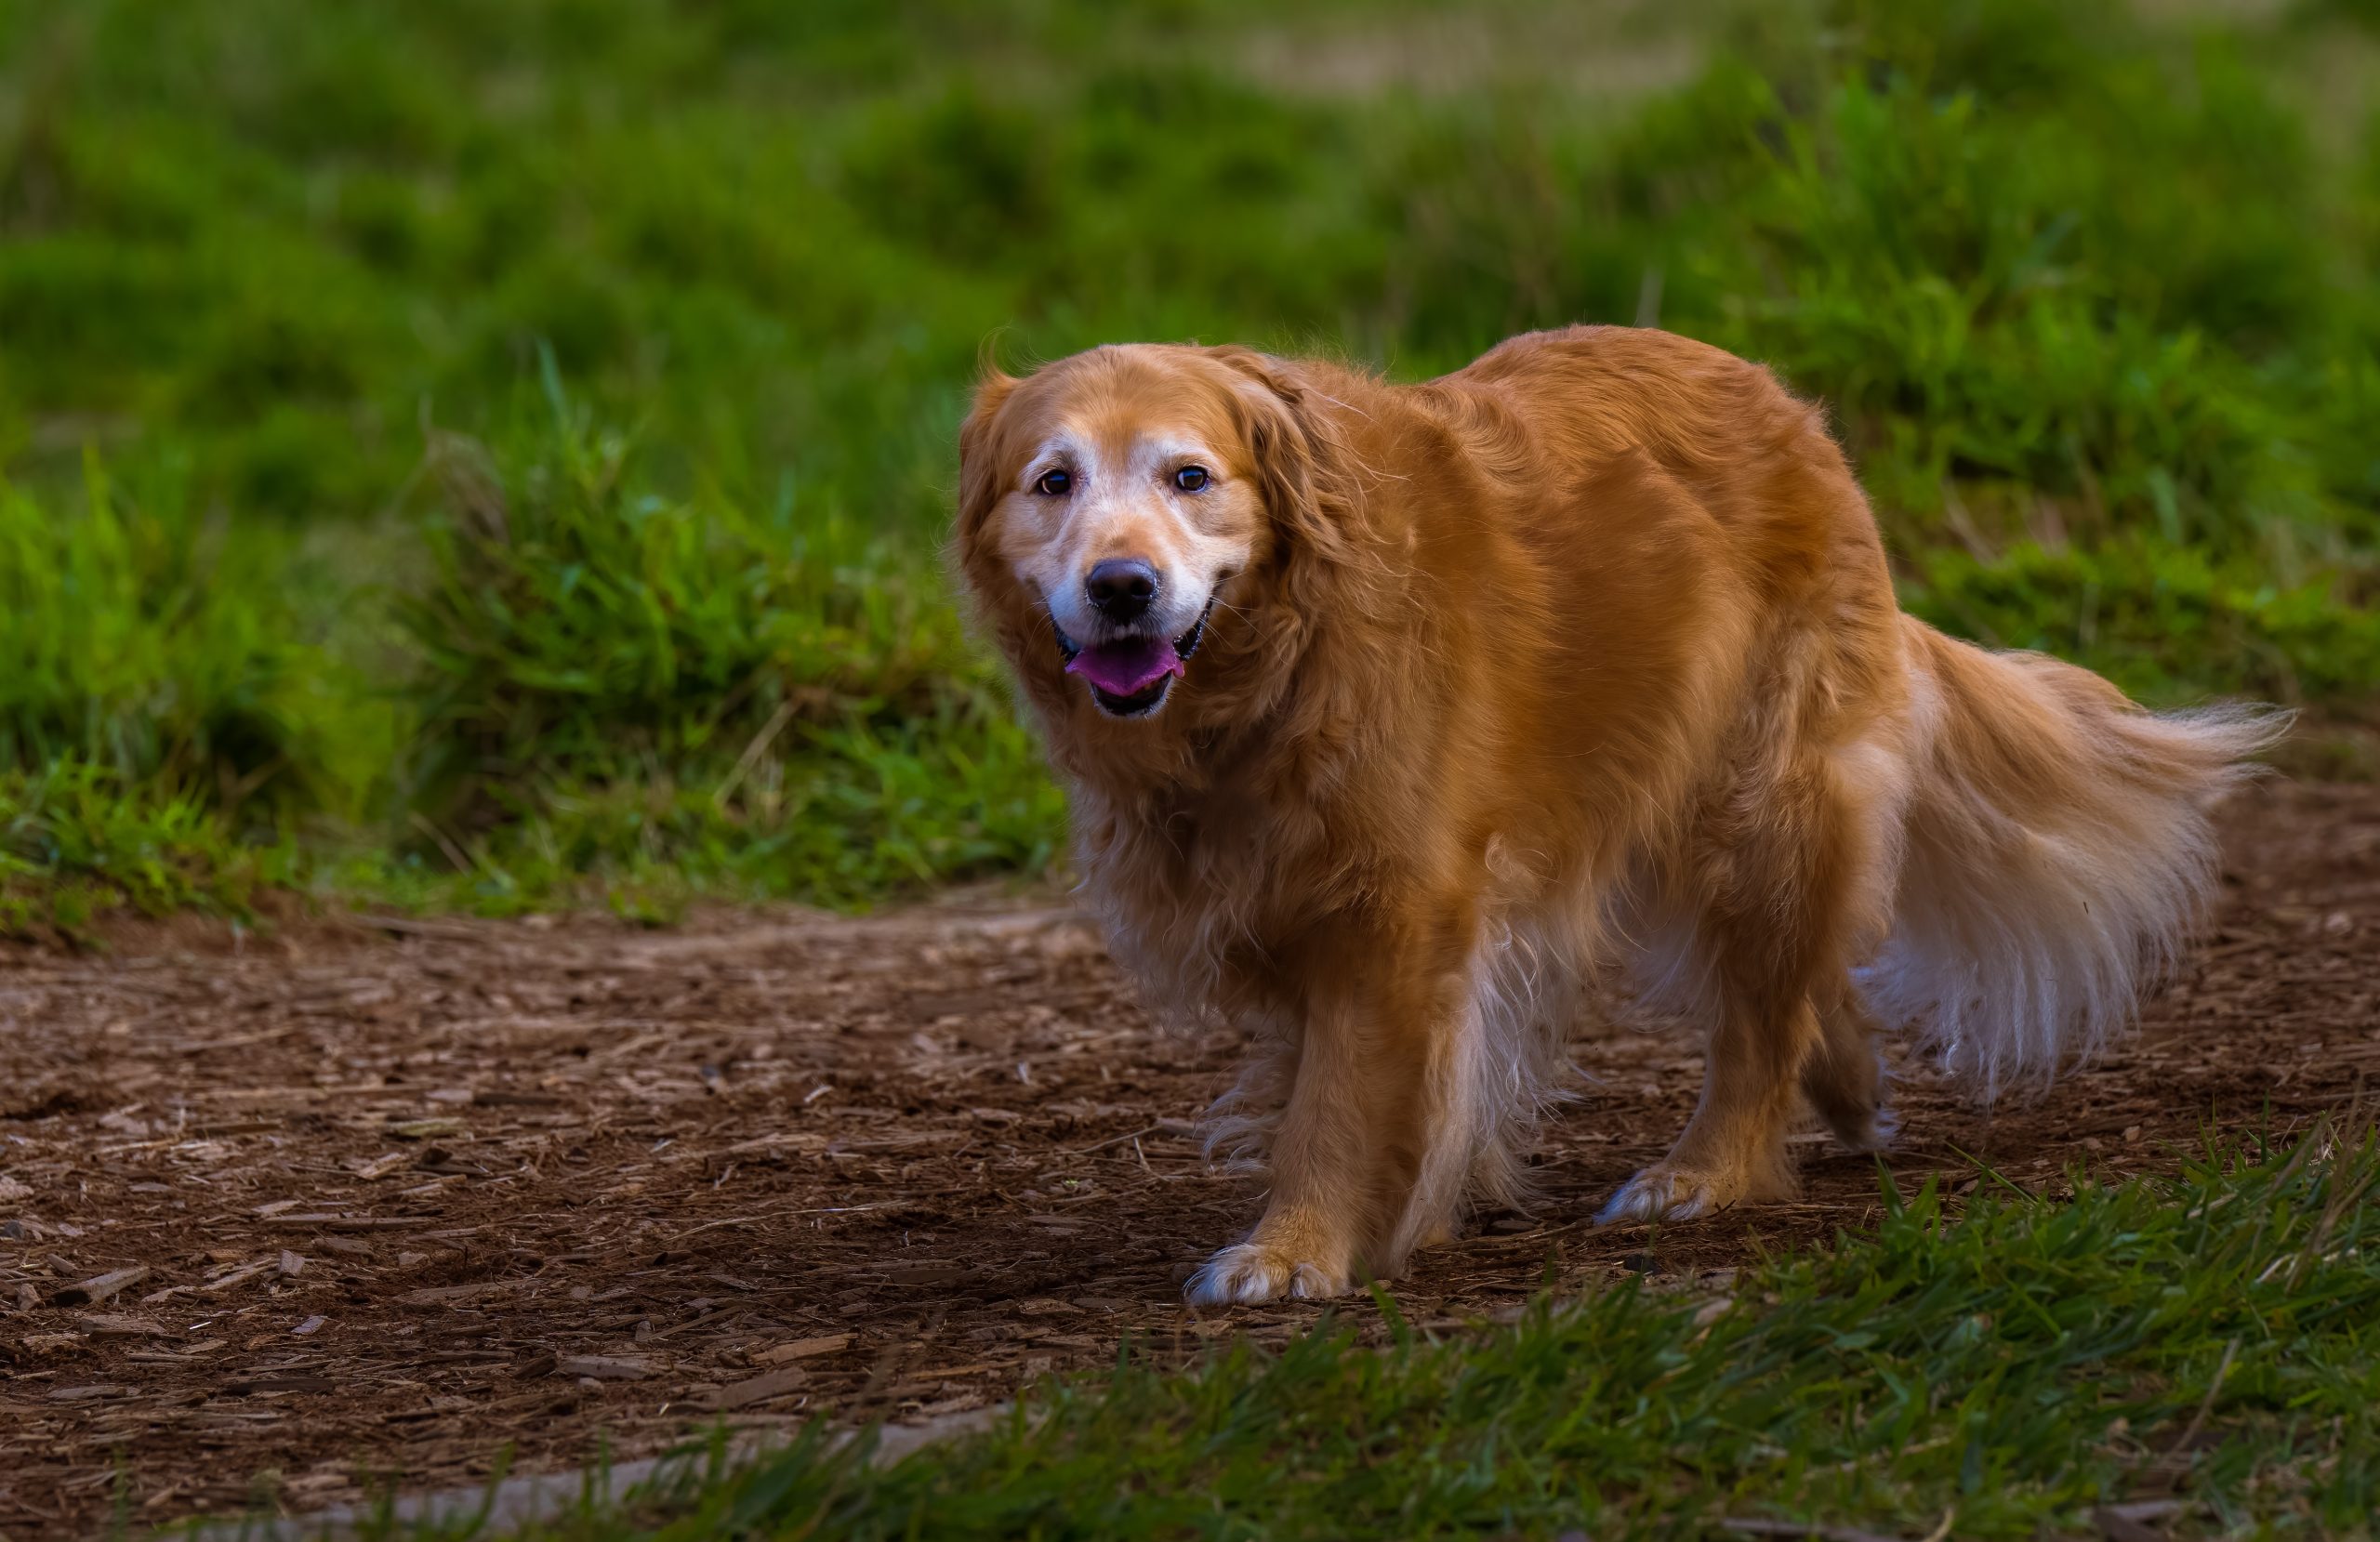 Old senior golden retriever walking over a grass field